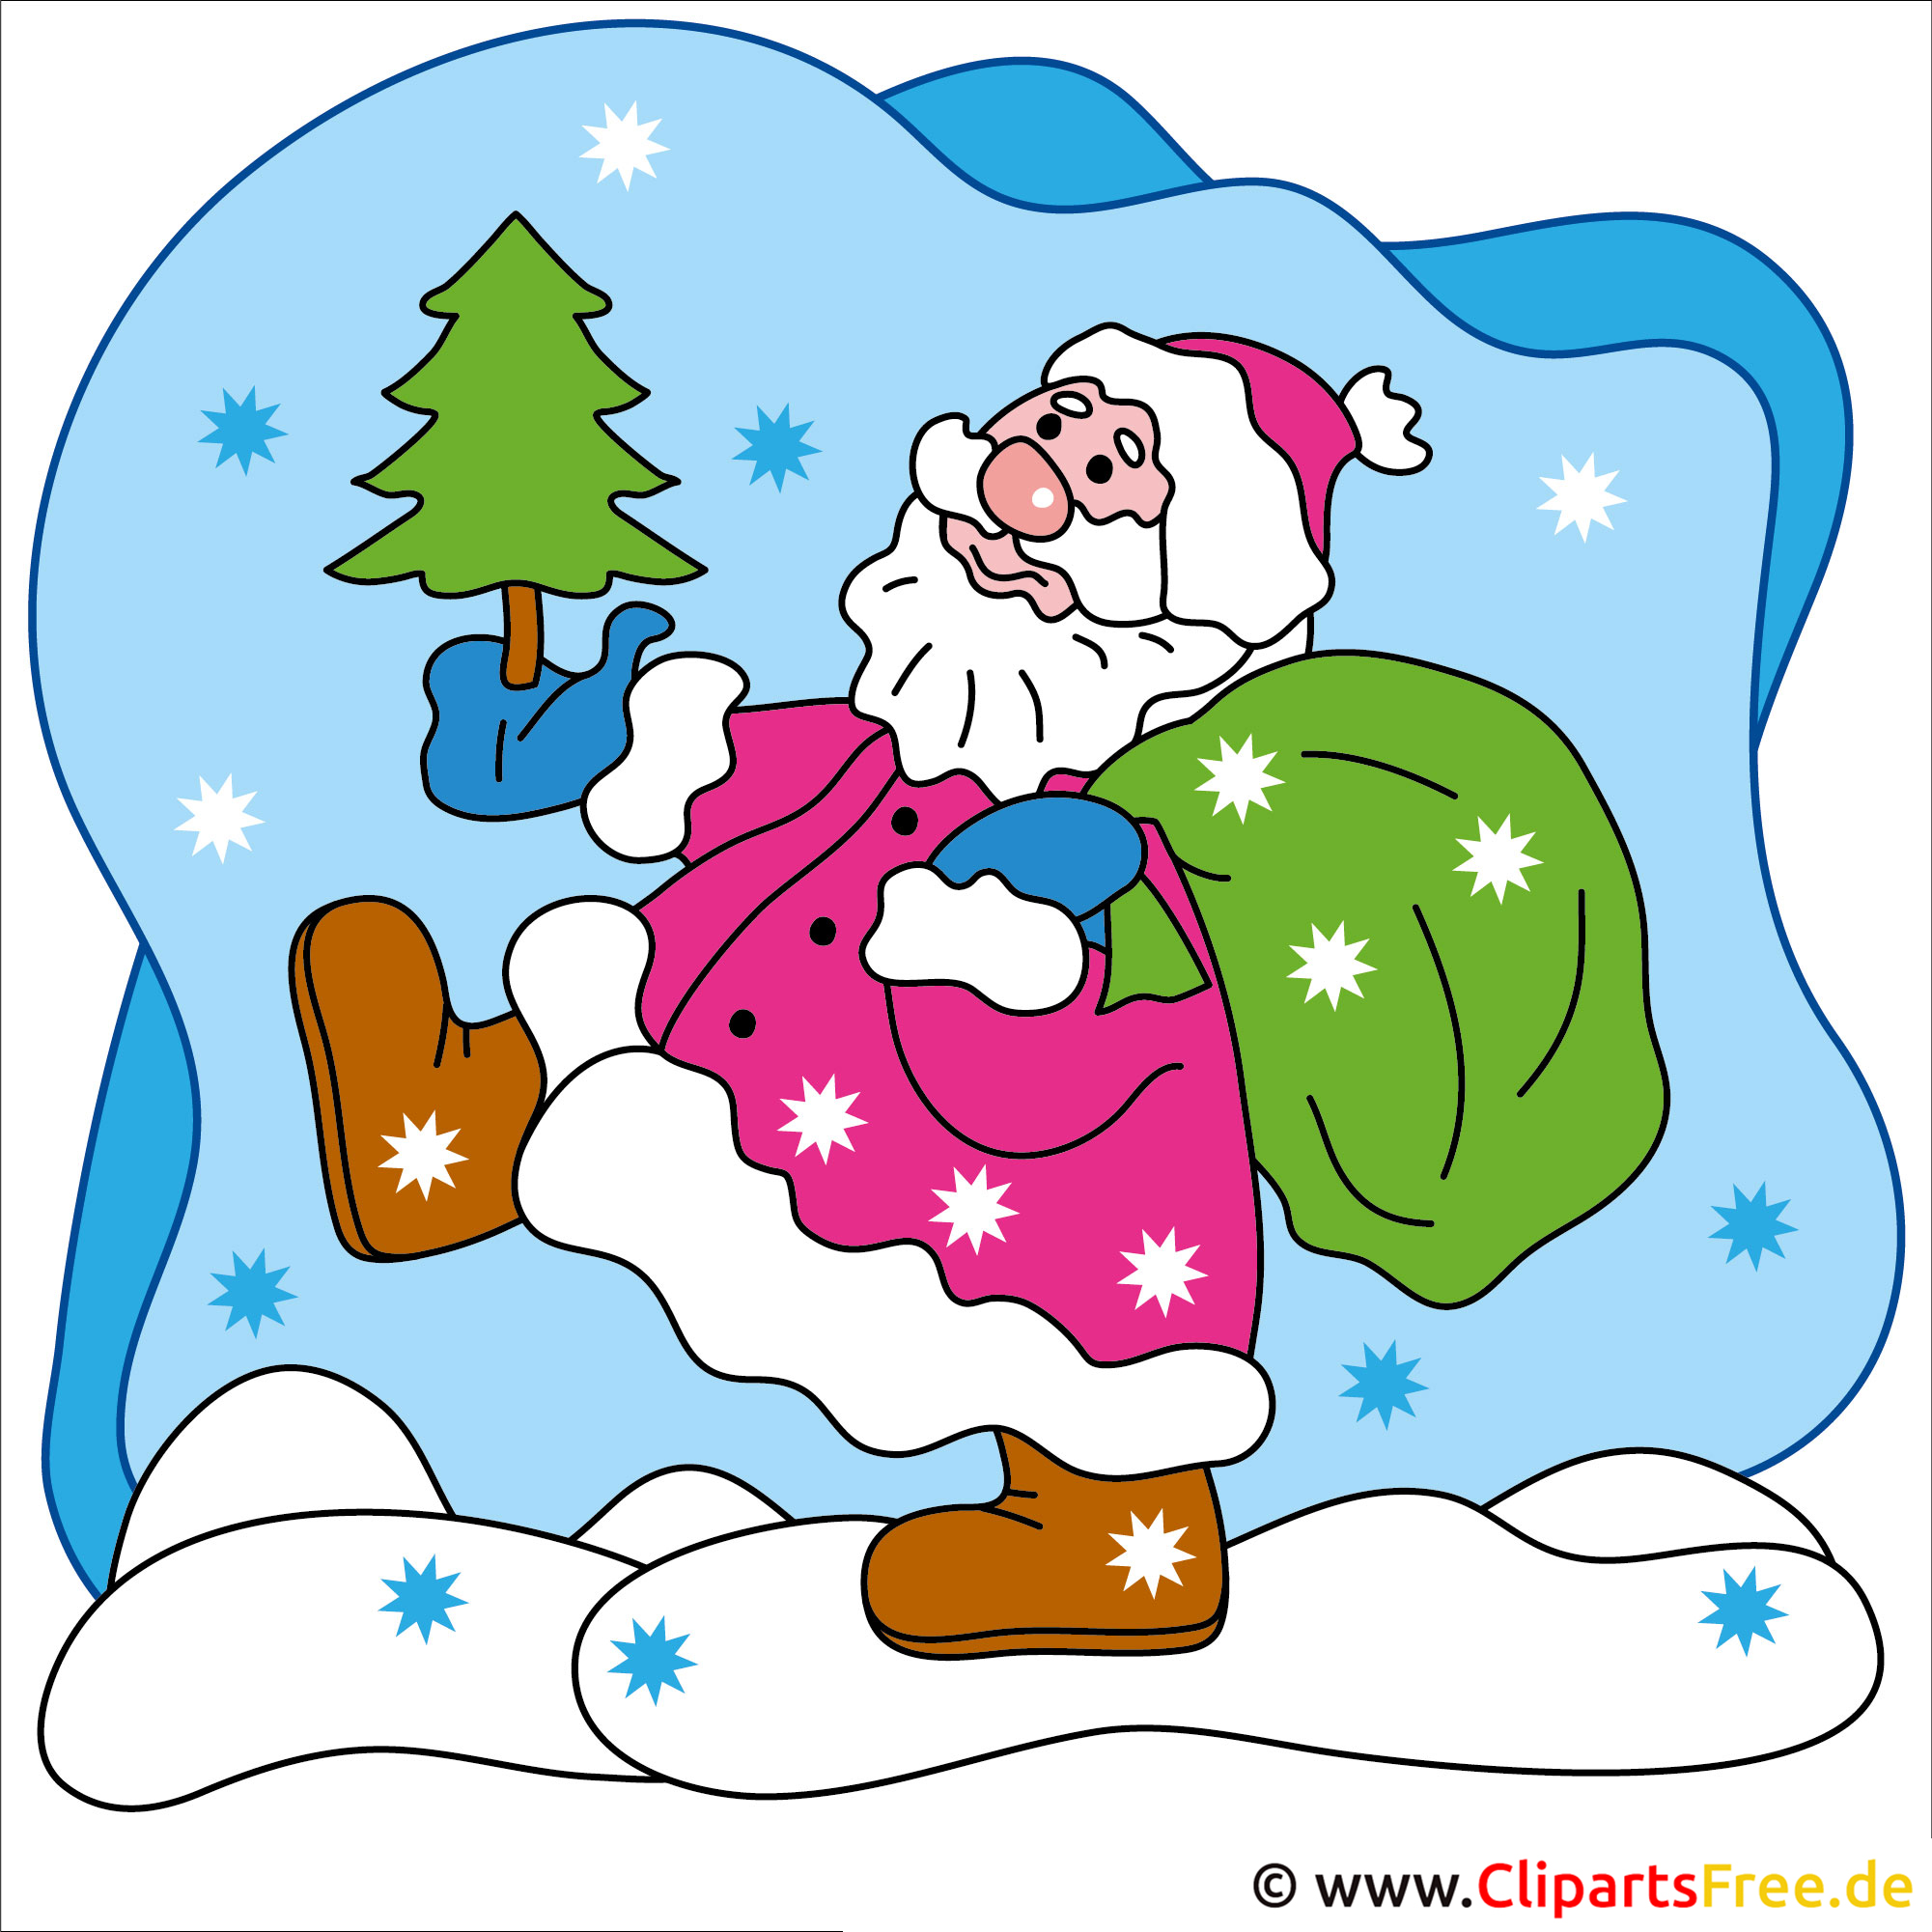 clipart weihnachten gratis download - photo #25